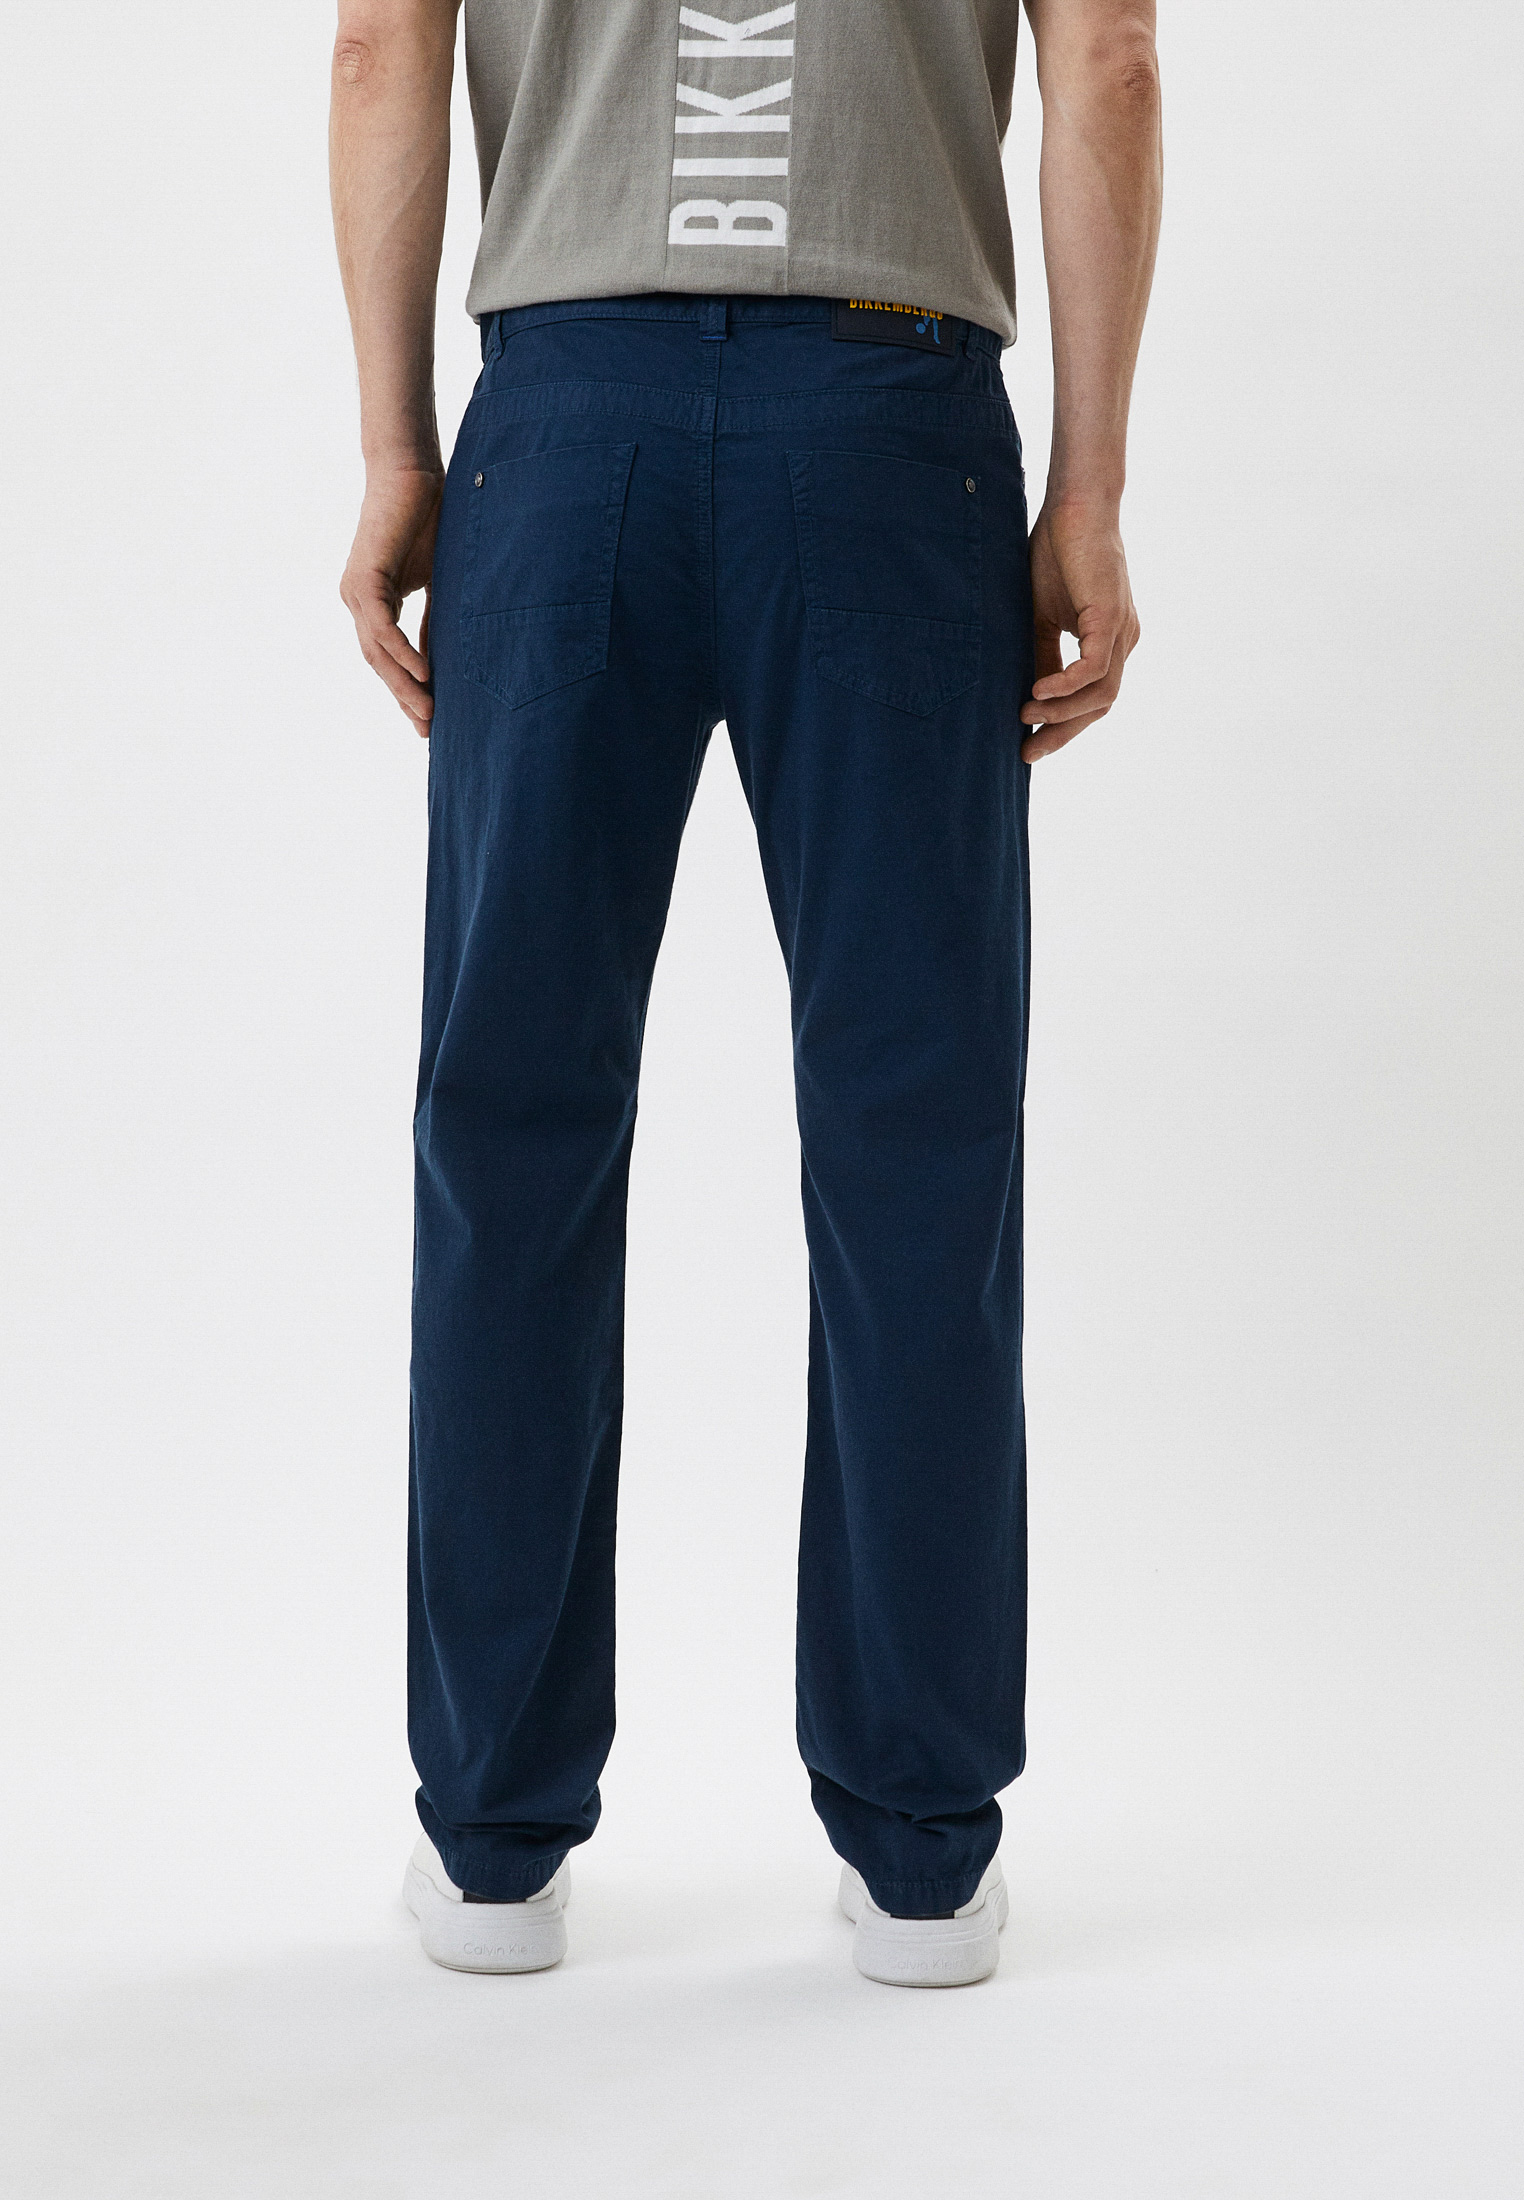 Мужские повседневные брюки Bikkembergs (Биккембергс) CQ10281S3513: изображение 3